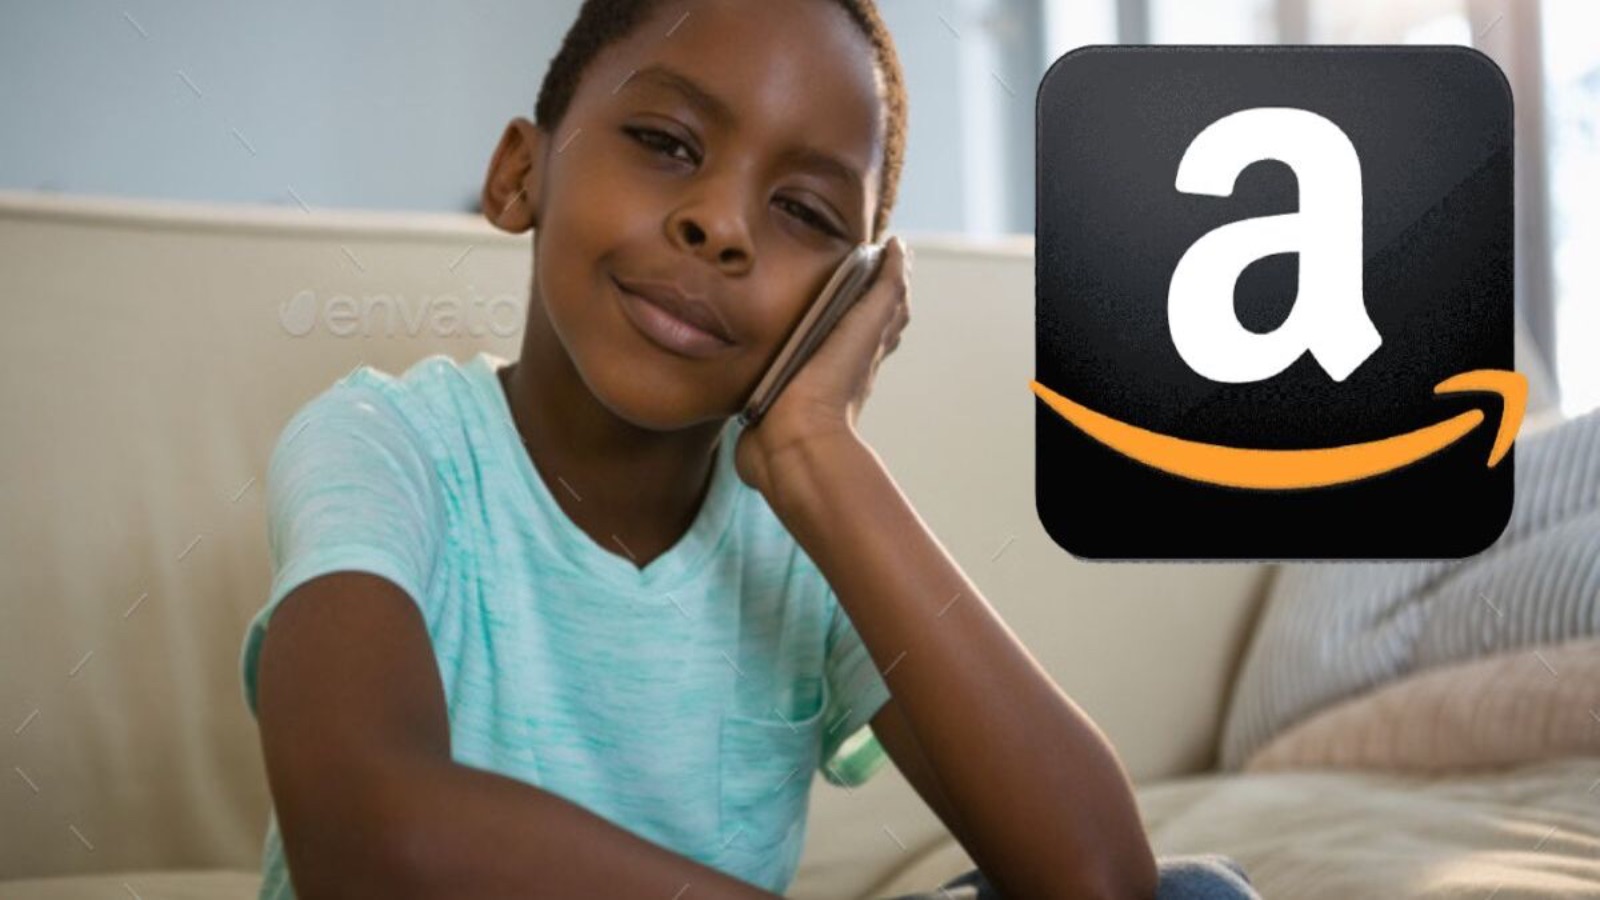 Amazon, offerte Black FRIDAY anticipate con sconti folli